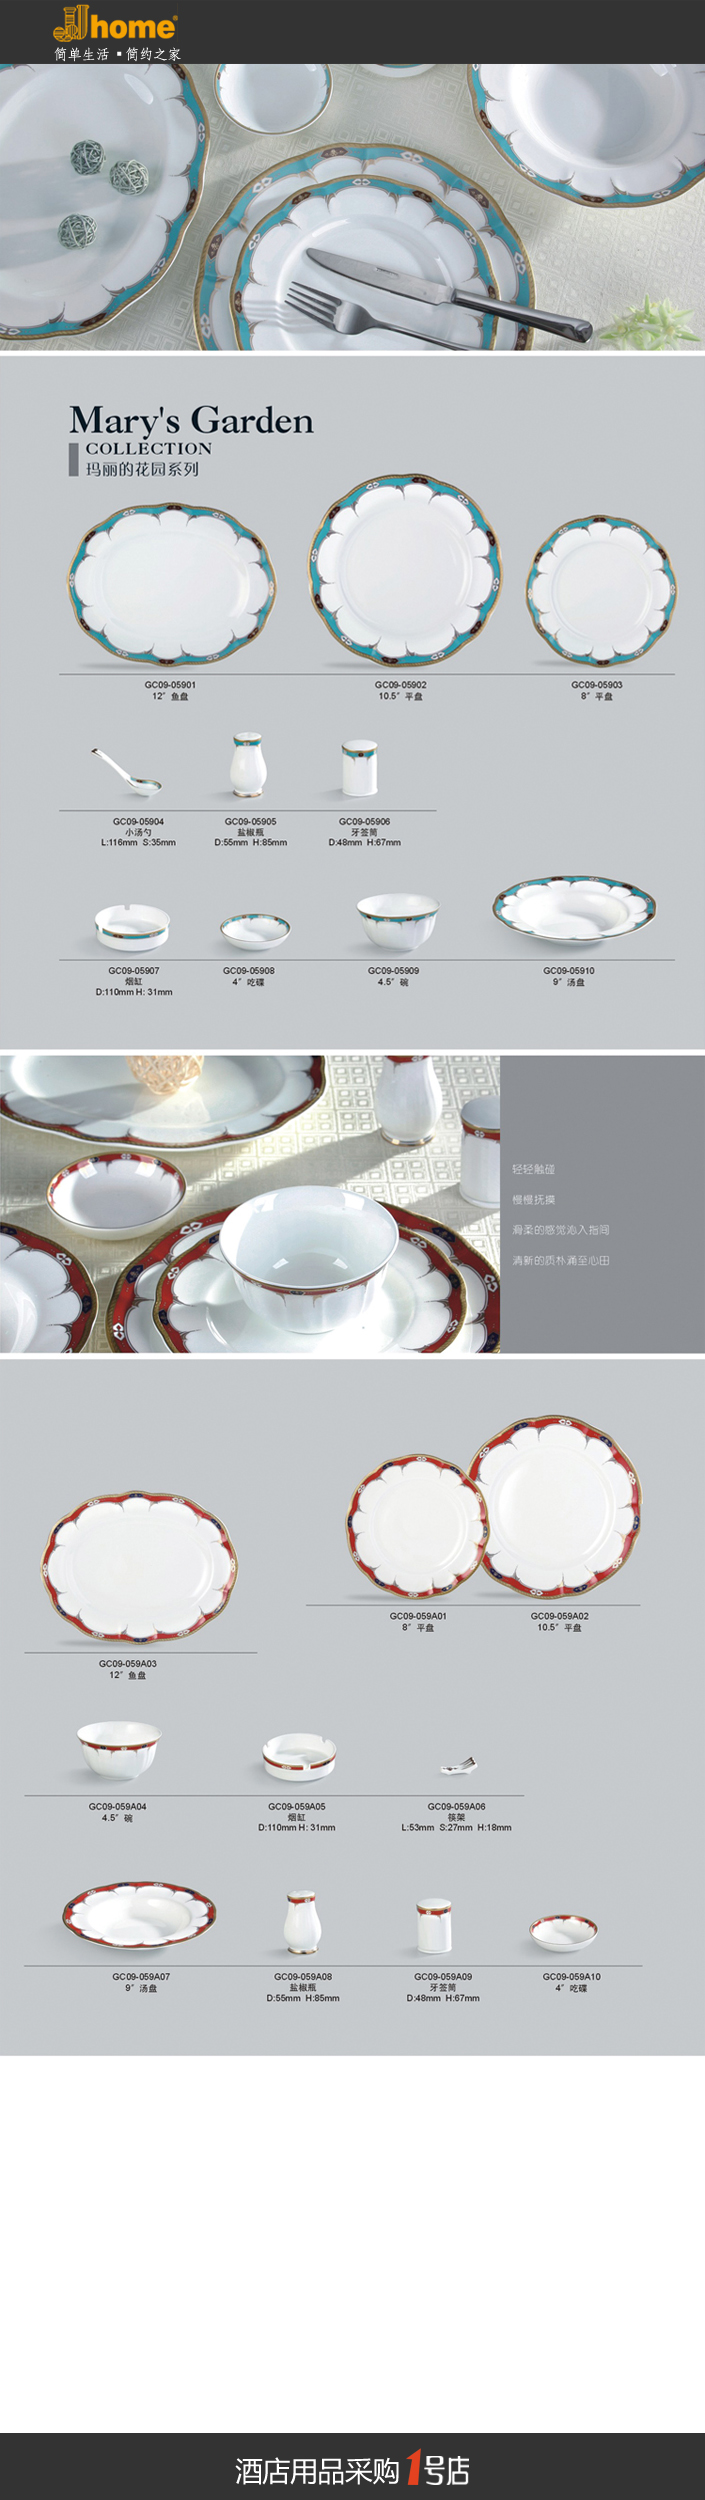 骨瓷  精美陶瓷碗盘 玛丽的花园系列 JJHOME酒店用品1号店